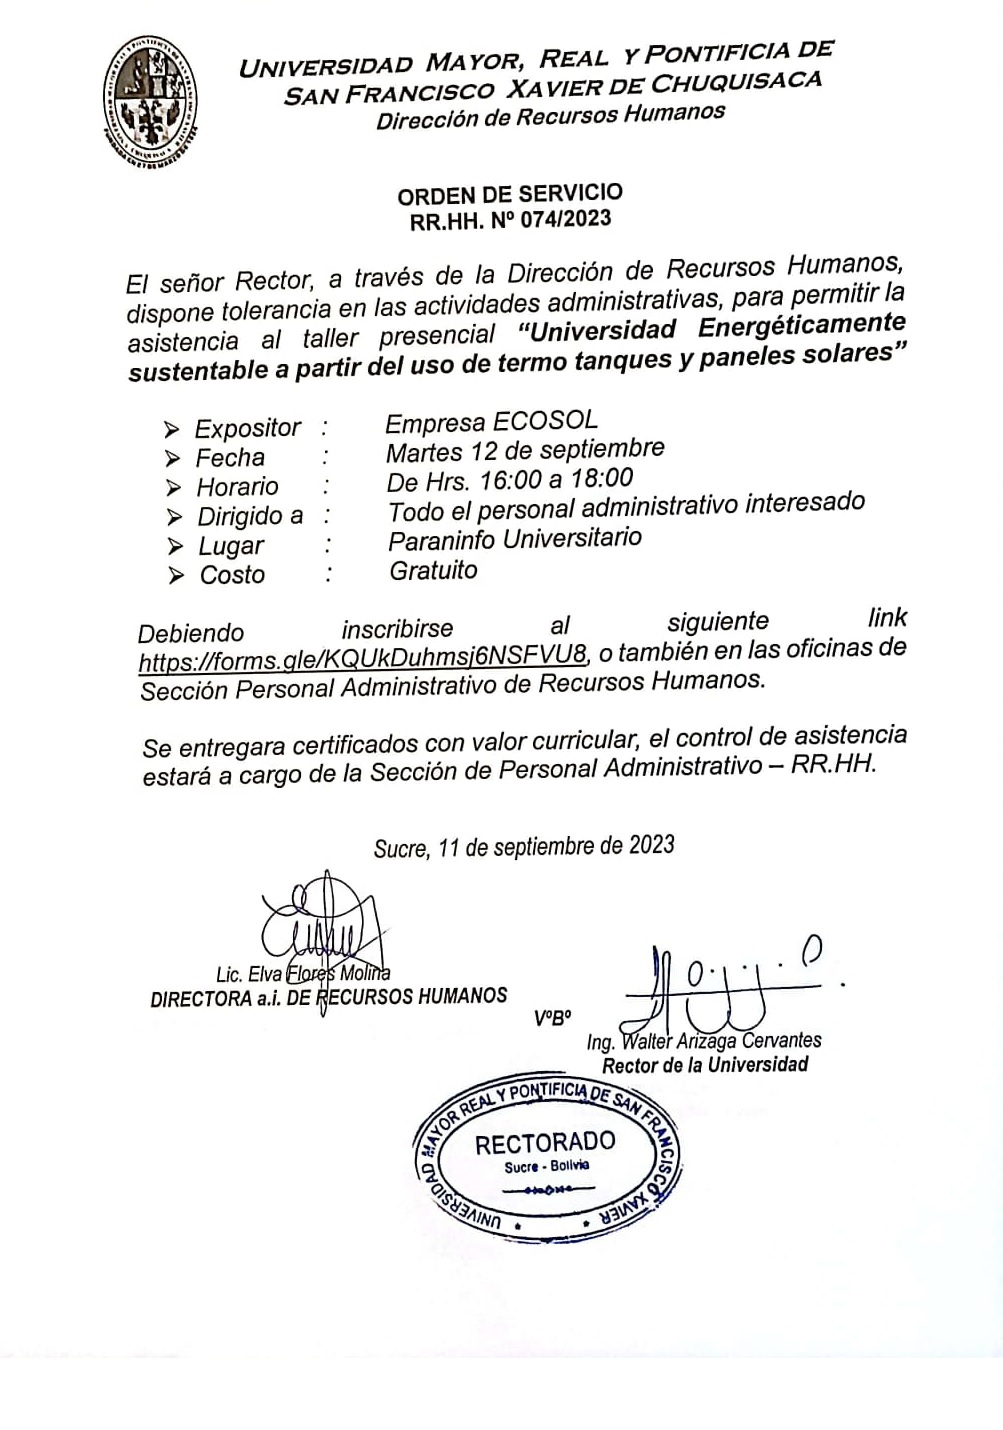 ORDEN DE SERVICIO RR.HH. Nº 074/2023, TOLERANCIA ADMINISTRATIVA TALLER PRESENCIAL.